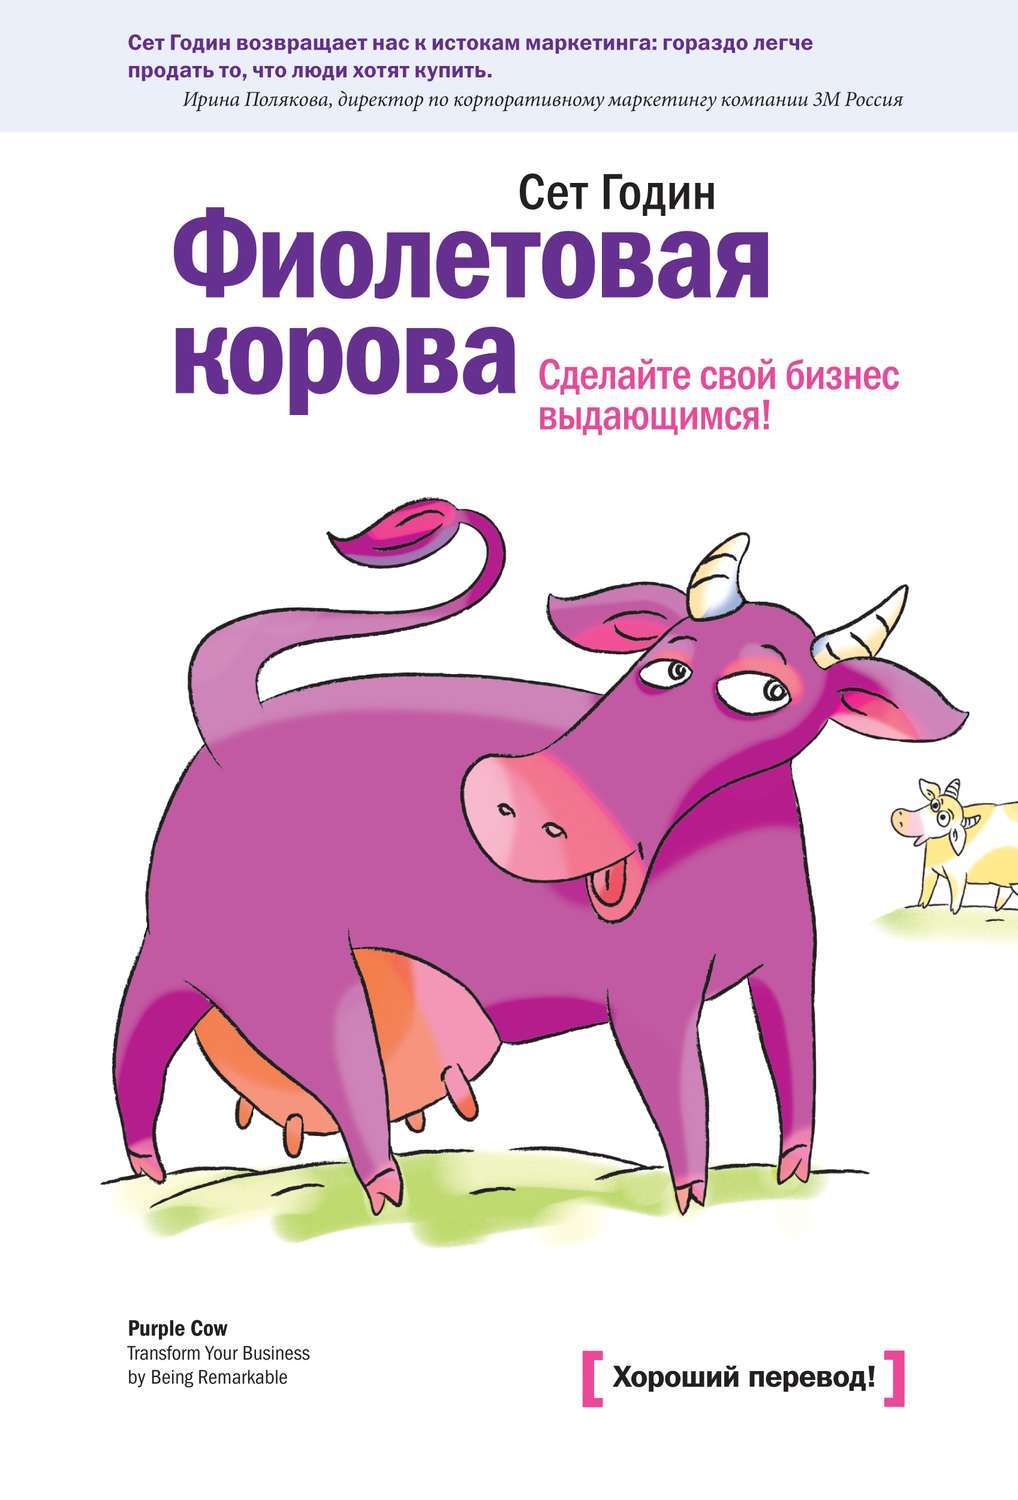 Сет годин фиолетовая корова